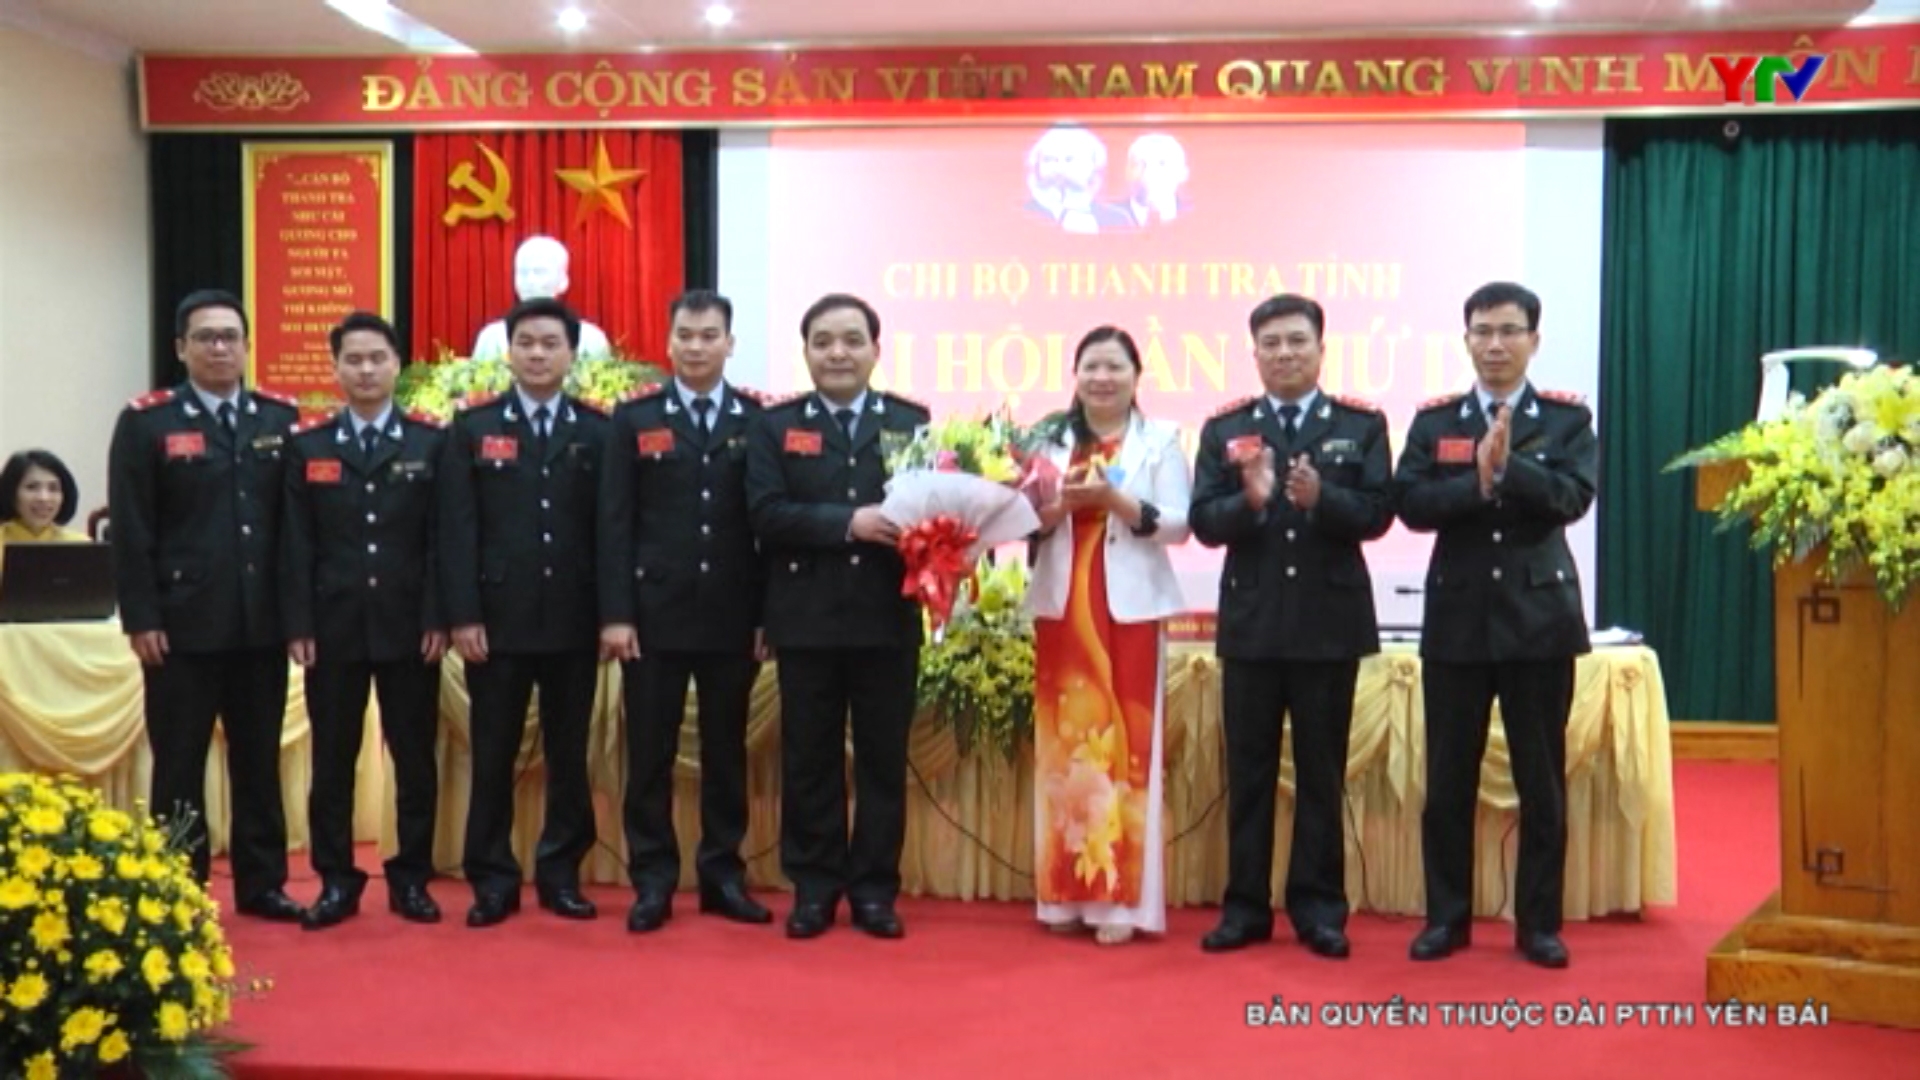 Đại hội Chi bộ Thanh tra tỉnh Yên Bái lần thứ IX, nhiệm kỳ 2020-2025